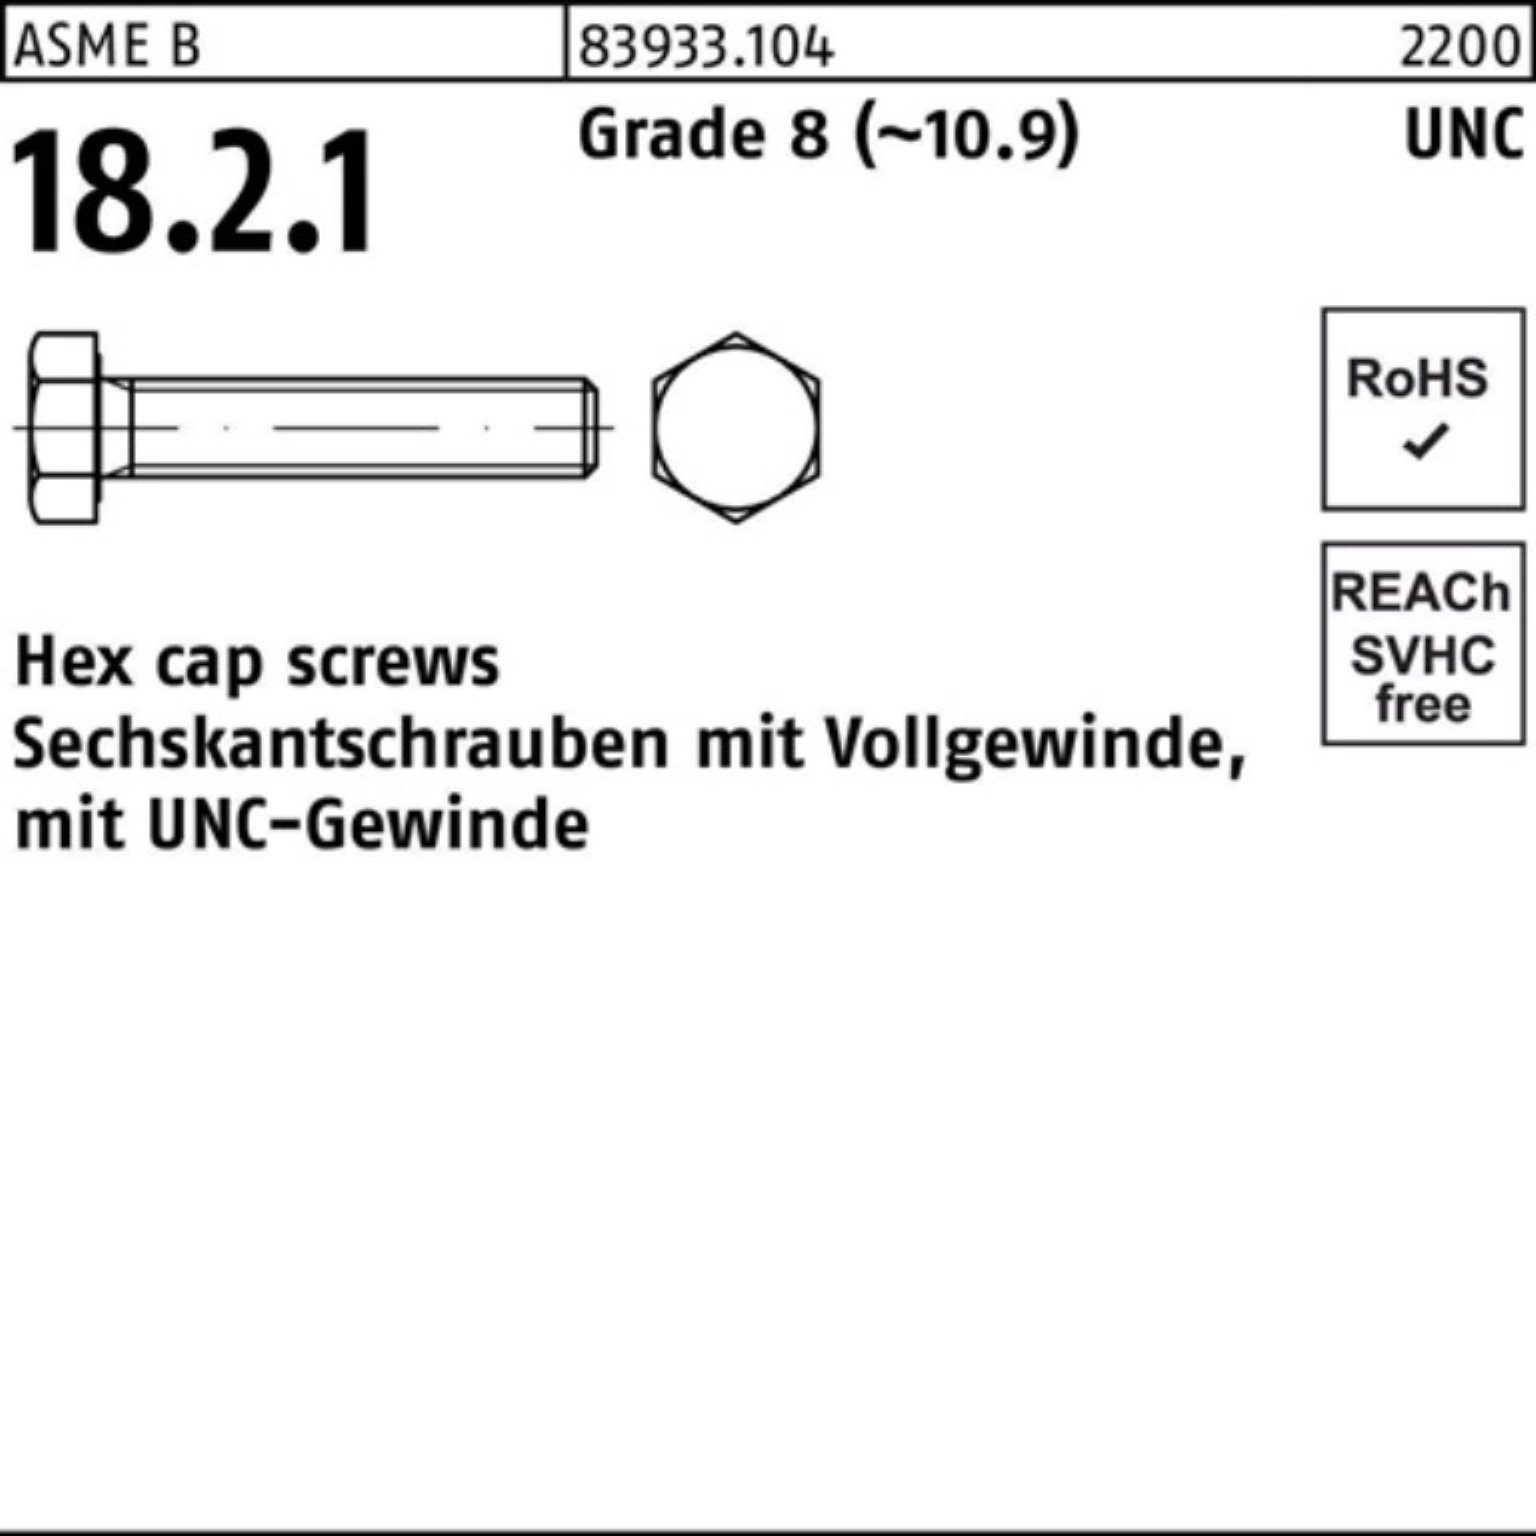 Reyher Sechskantschraube 100er Pack Sechskantschraube R 83933 UNC-Gewinde VG 3/4x 2 Grade 8 (1